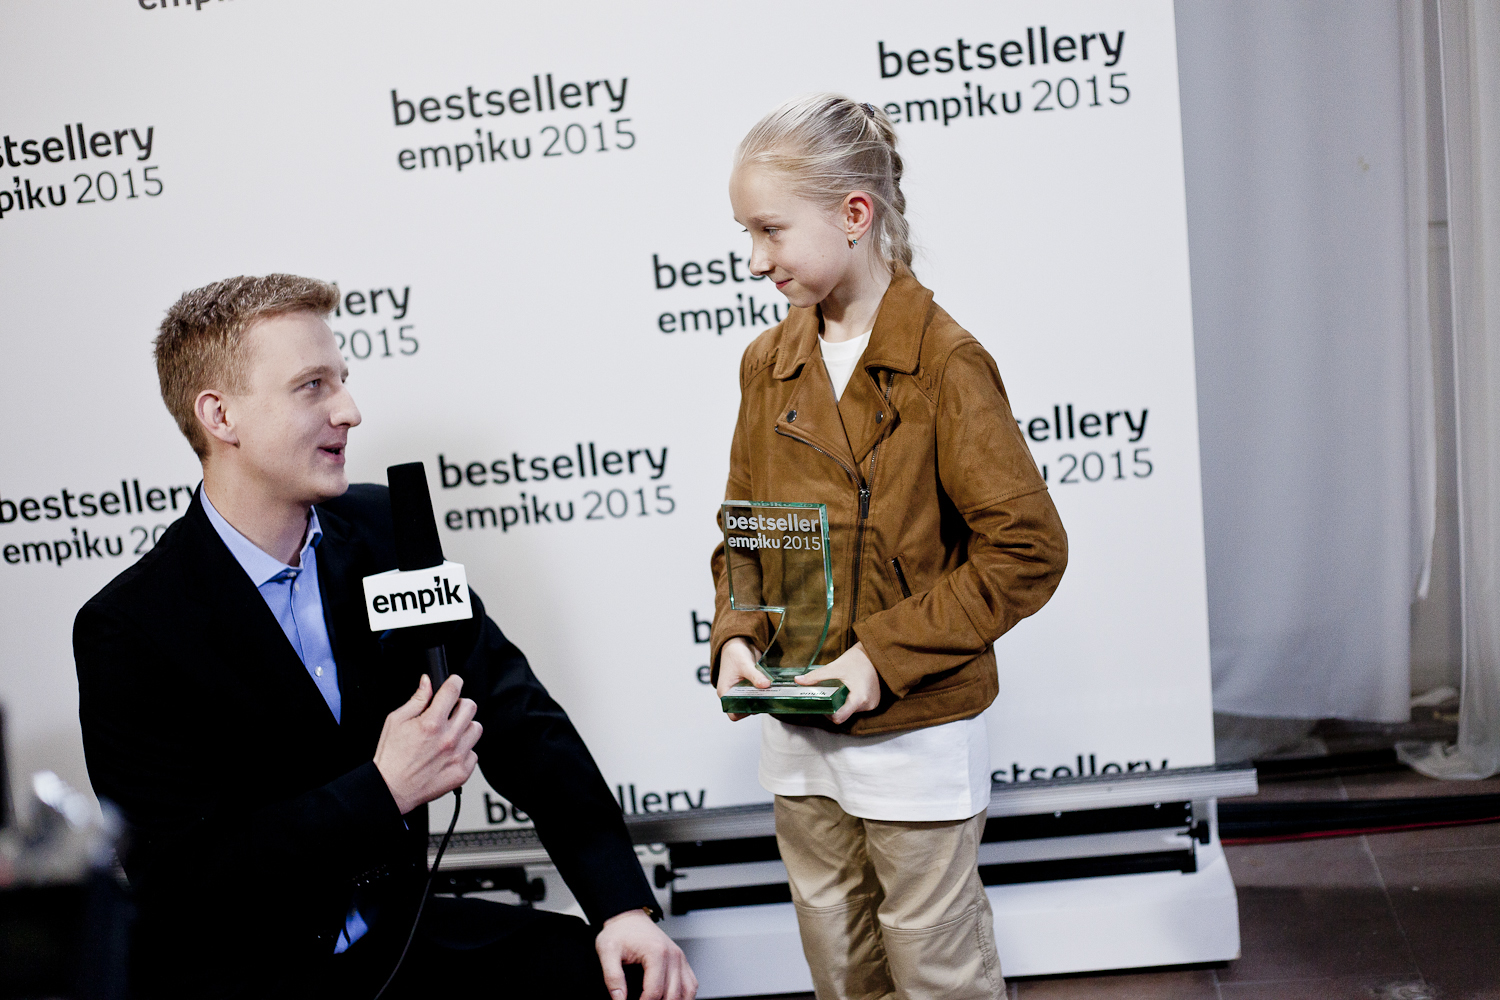 Dziesięcioletnia Nela zdobywczynią nagrody Bestseller Empiku 2015!